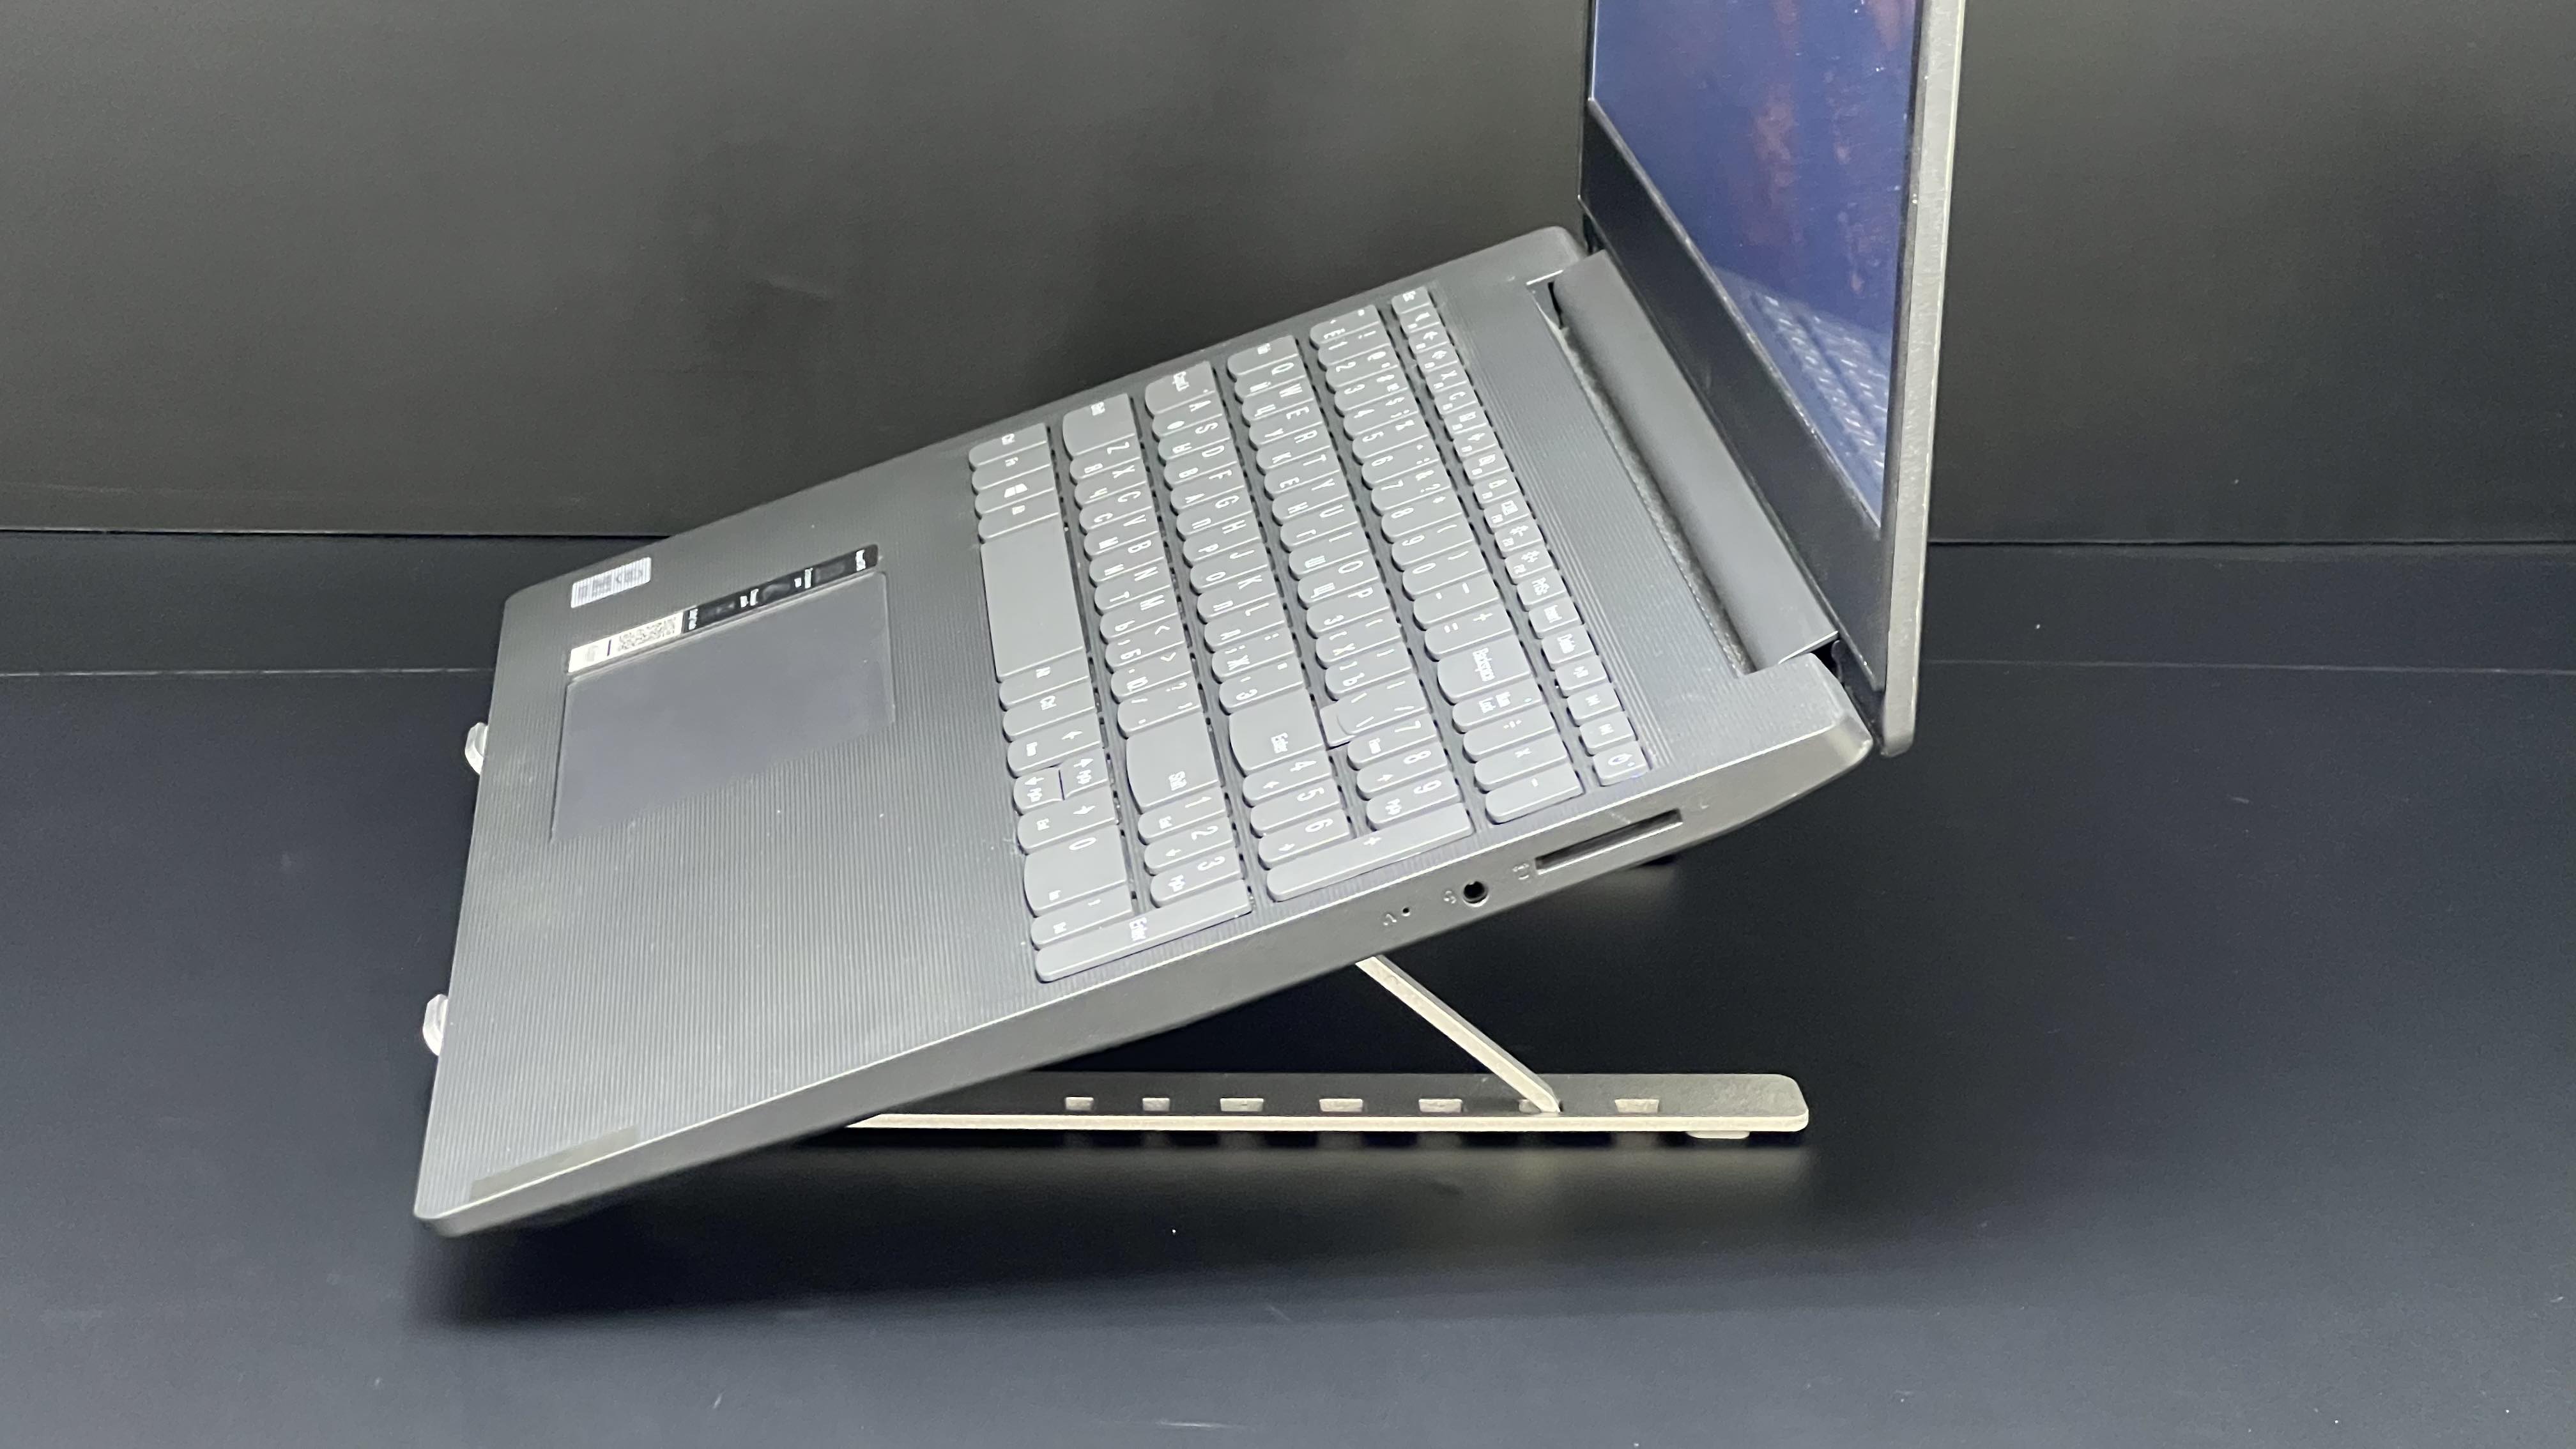 Ноутбук Lenovo Ideapad S145-15IIL (81W8000NRK)